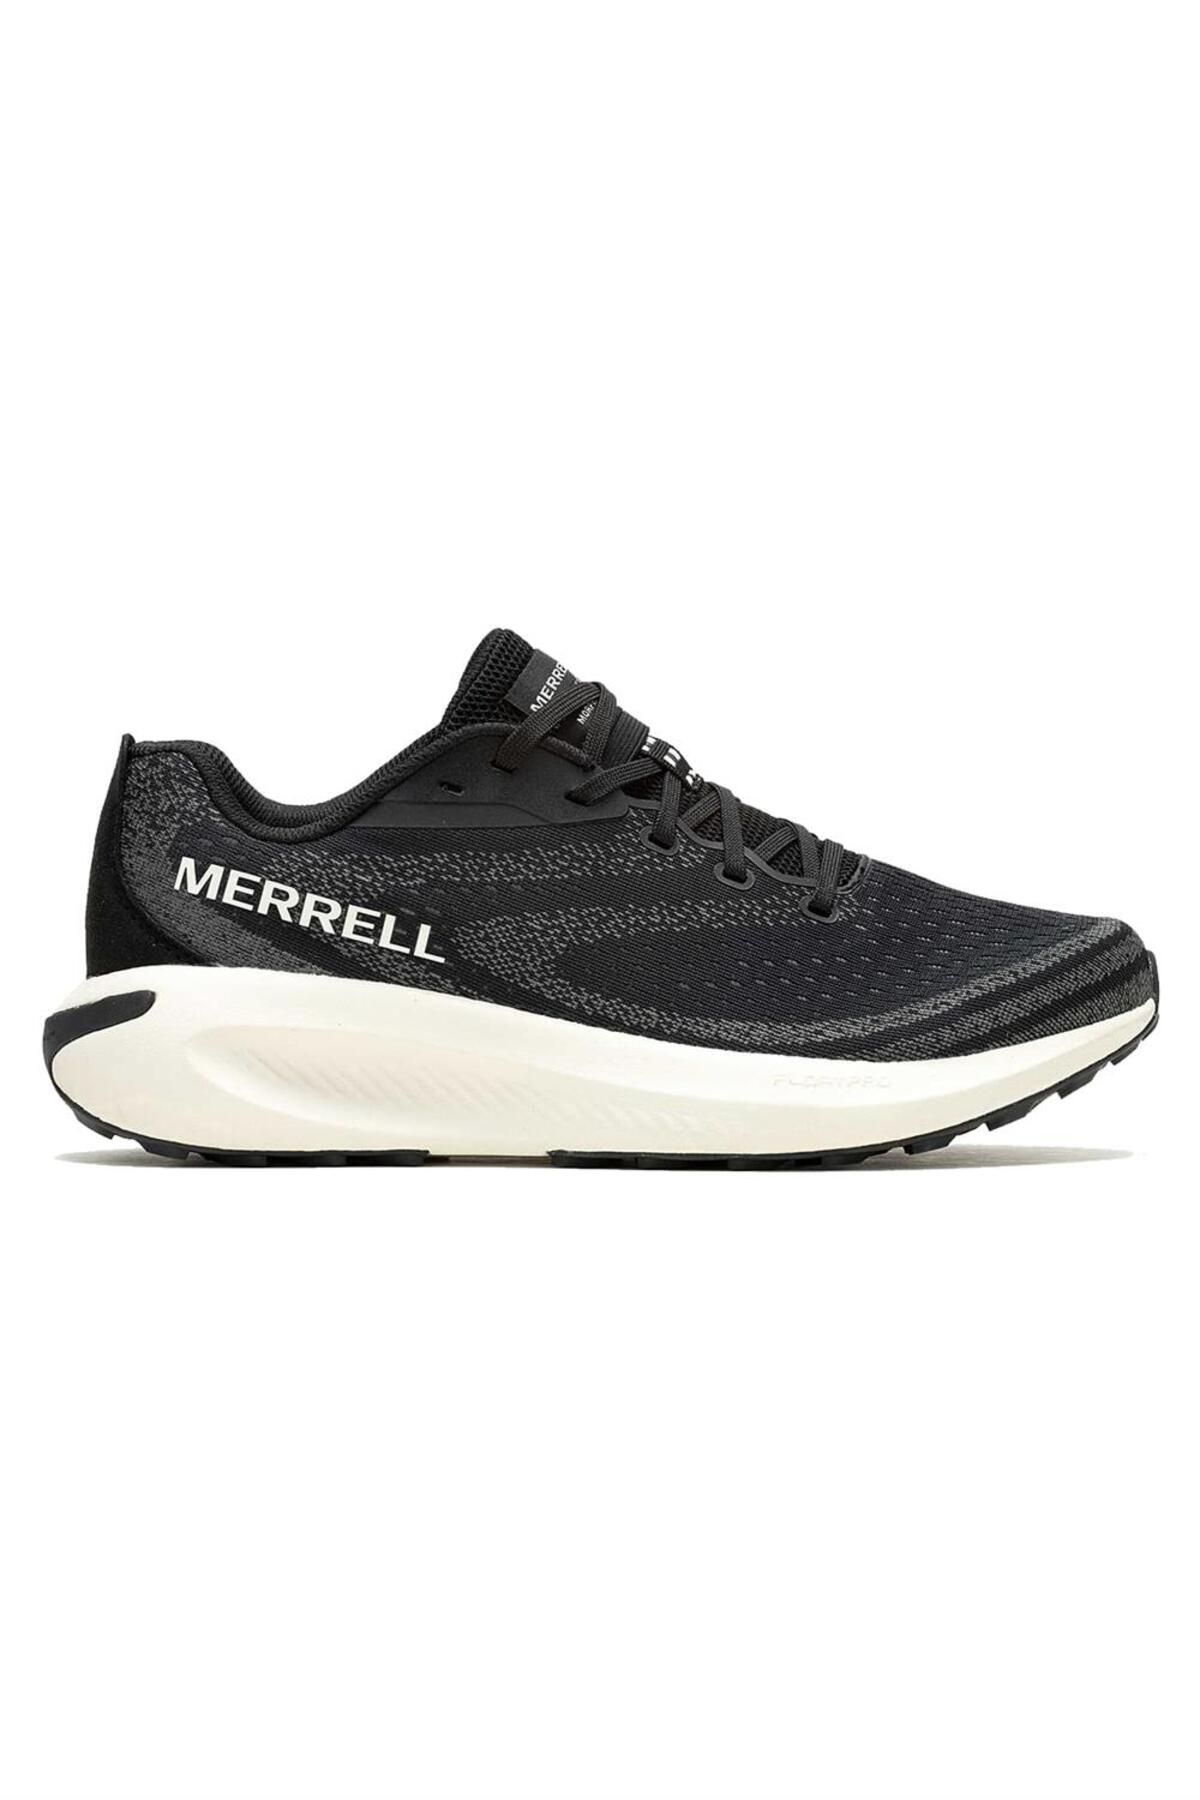 Merrell Morphlıte Erkek Patika Koşu Ayakkabısı J068167